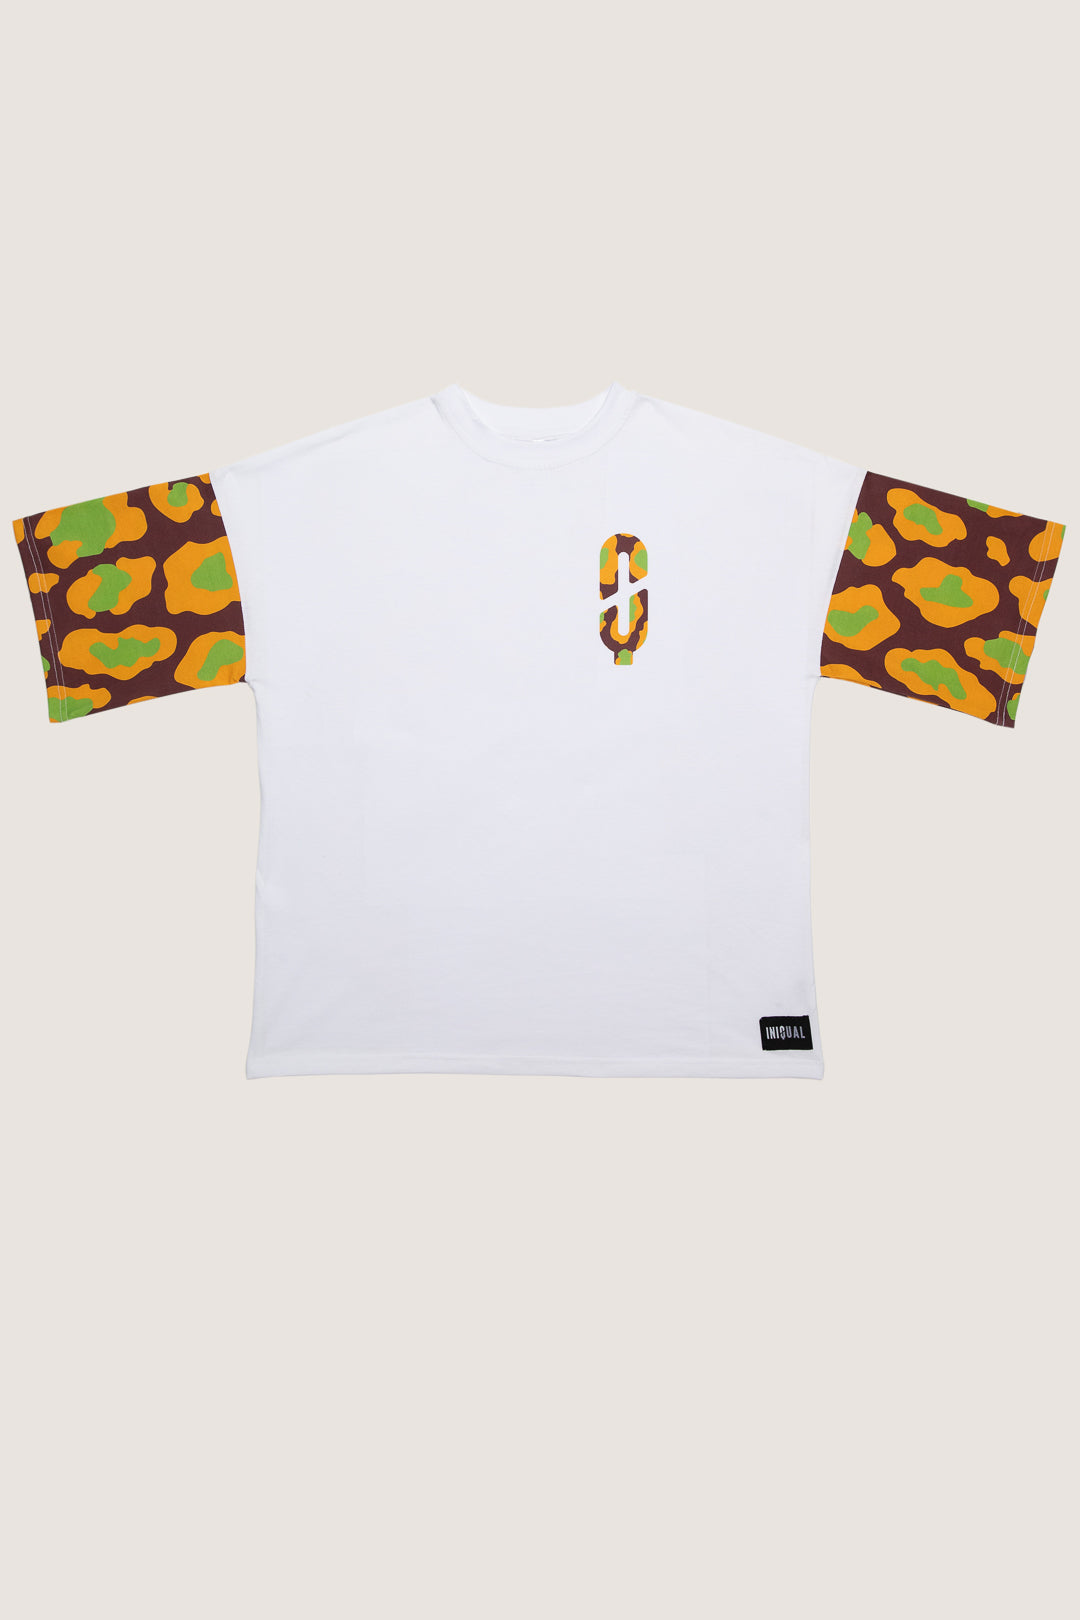 Presentación de la camiseta de la cápsula safari en plano